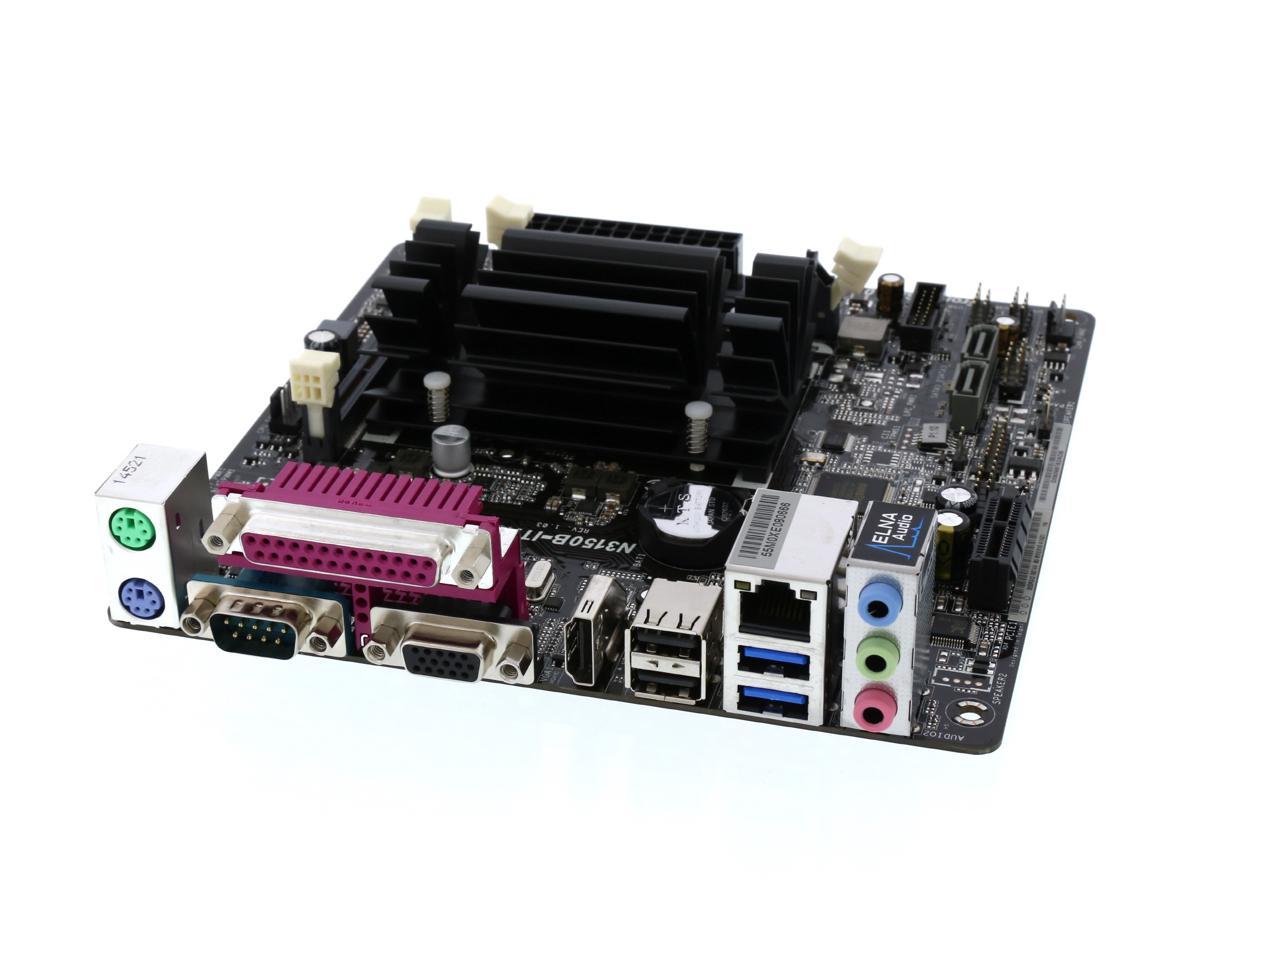 ASRock N3150B-ITX Intel Quad-Core Processor N3150 (up to 2.08 GHz) Mini